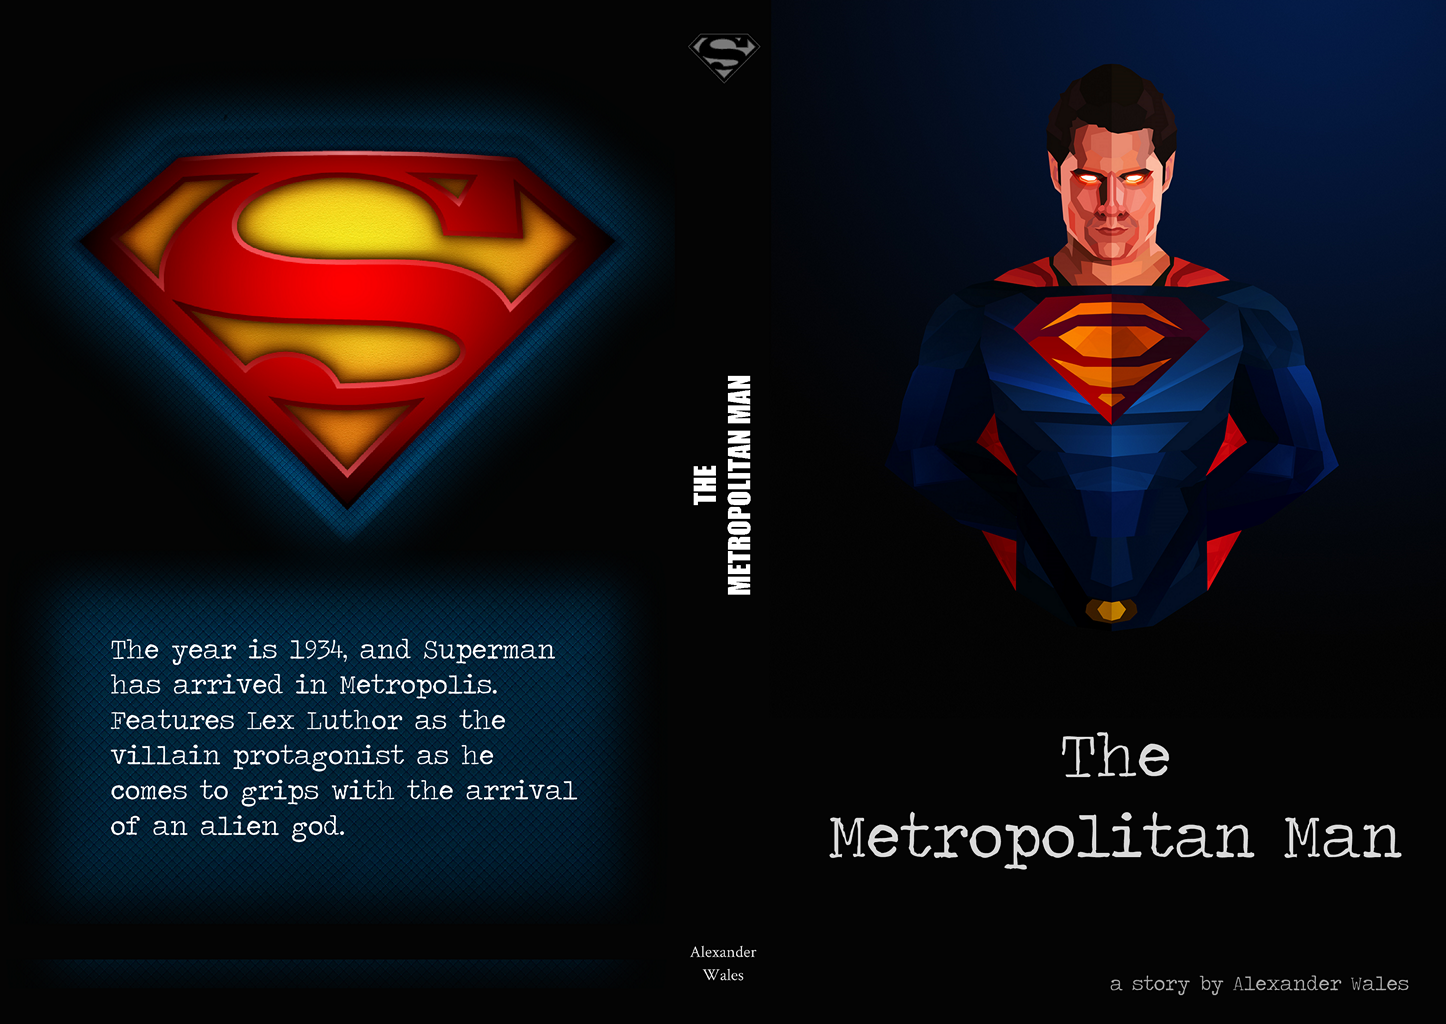 The Metropolitan Man